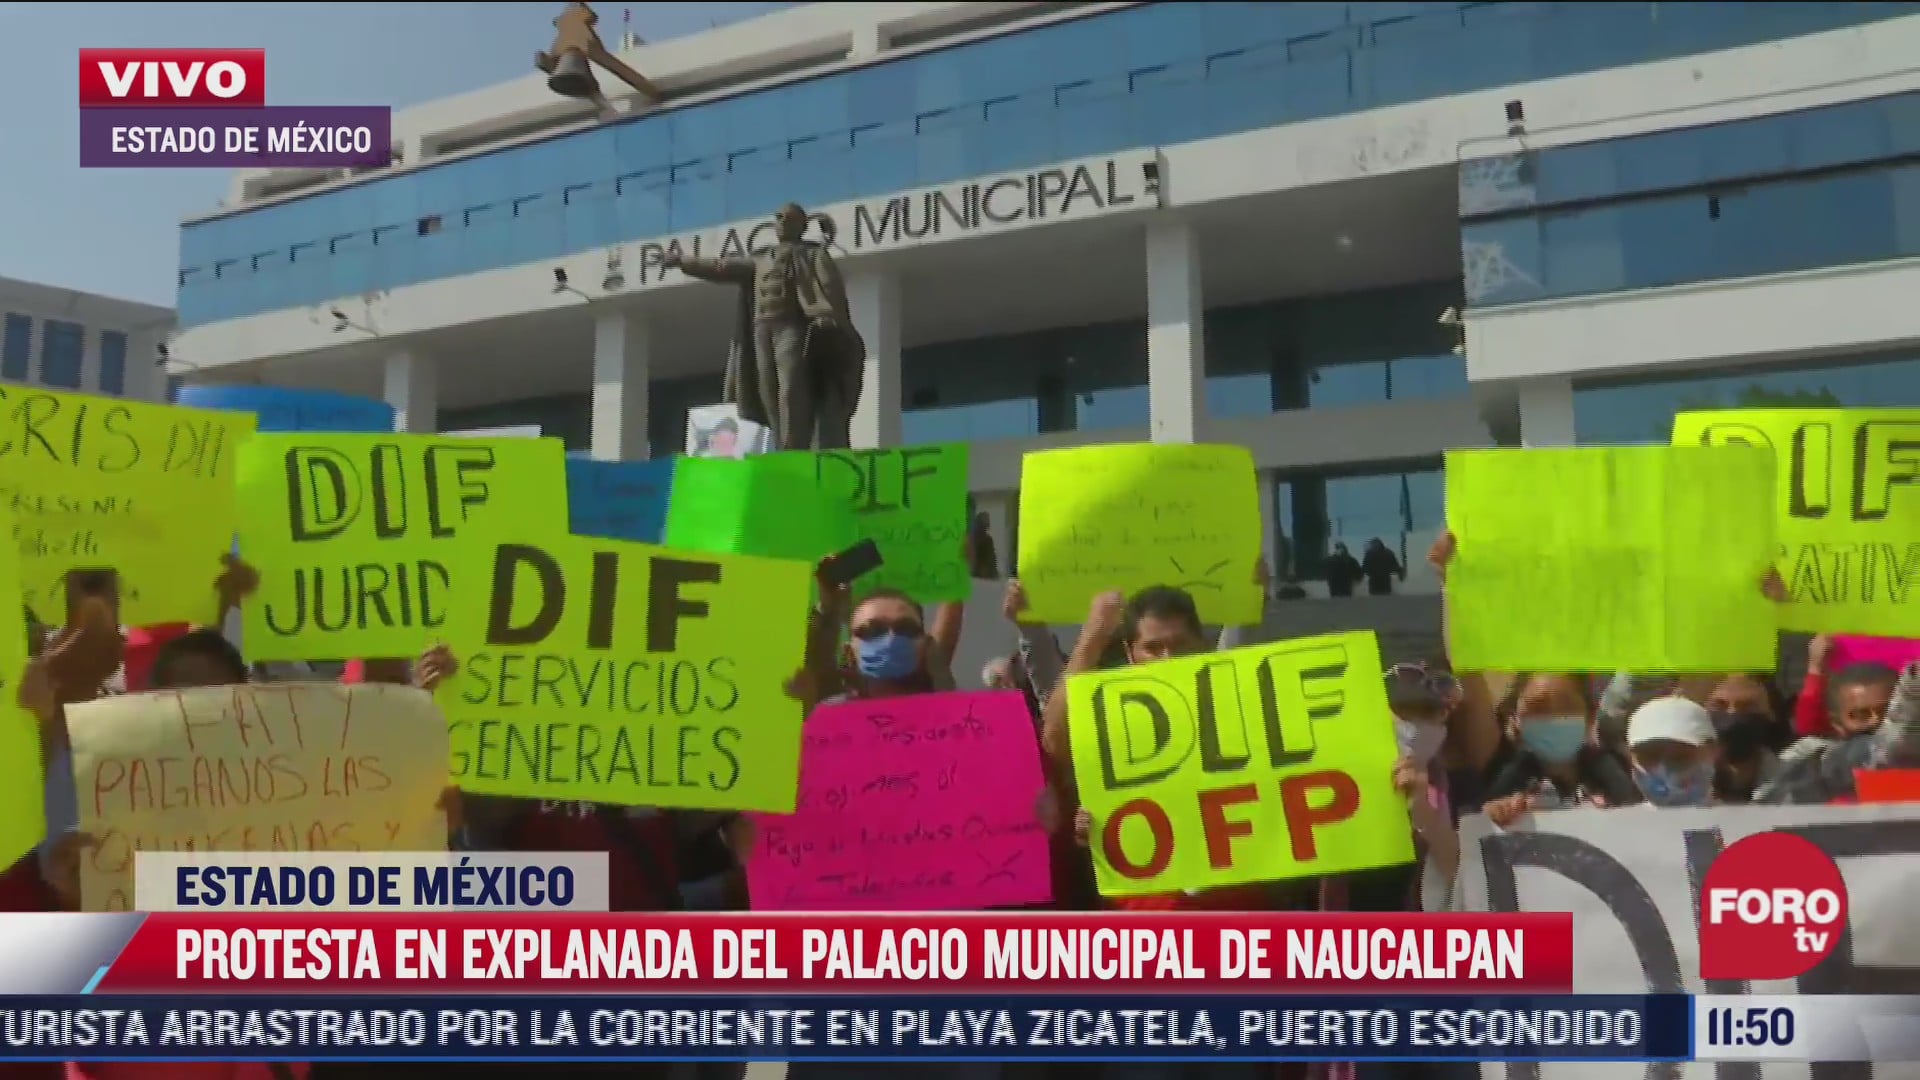 protesta en explanada del palacio municipal de naucalpan estado de mexico